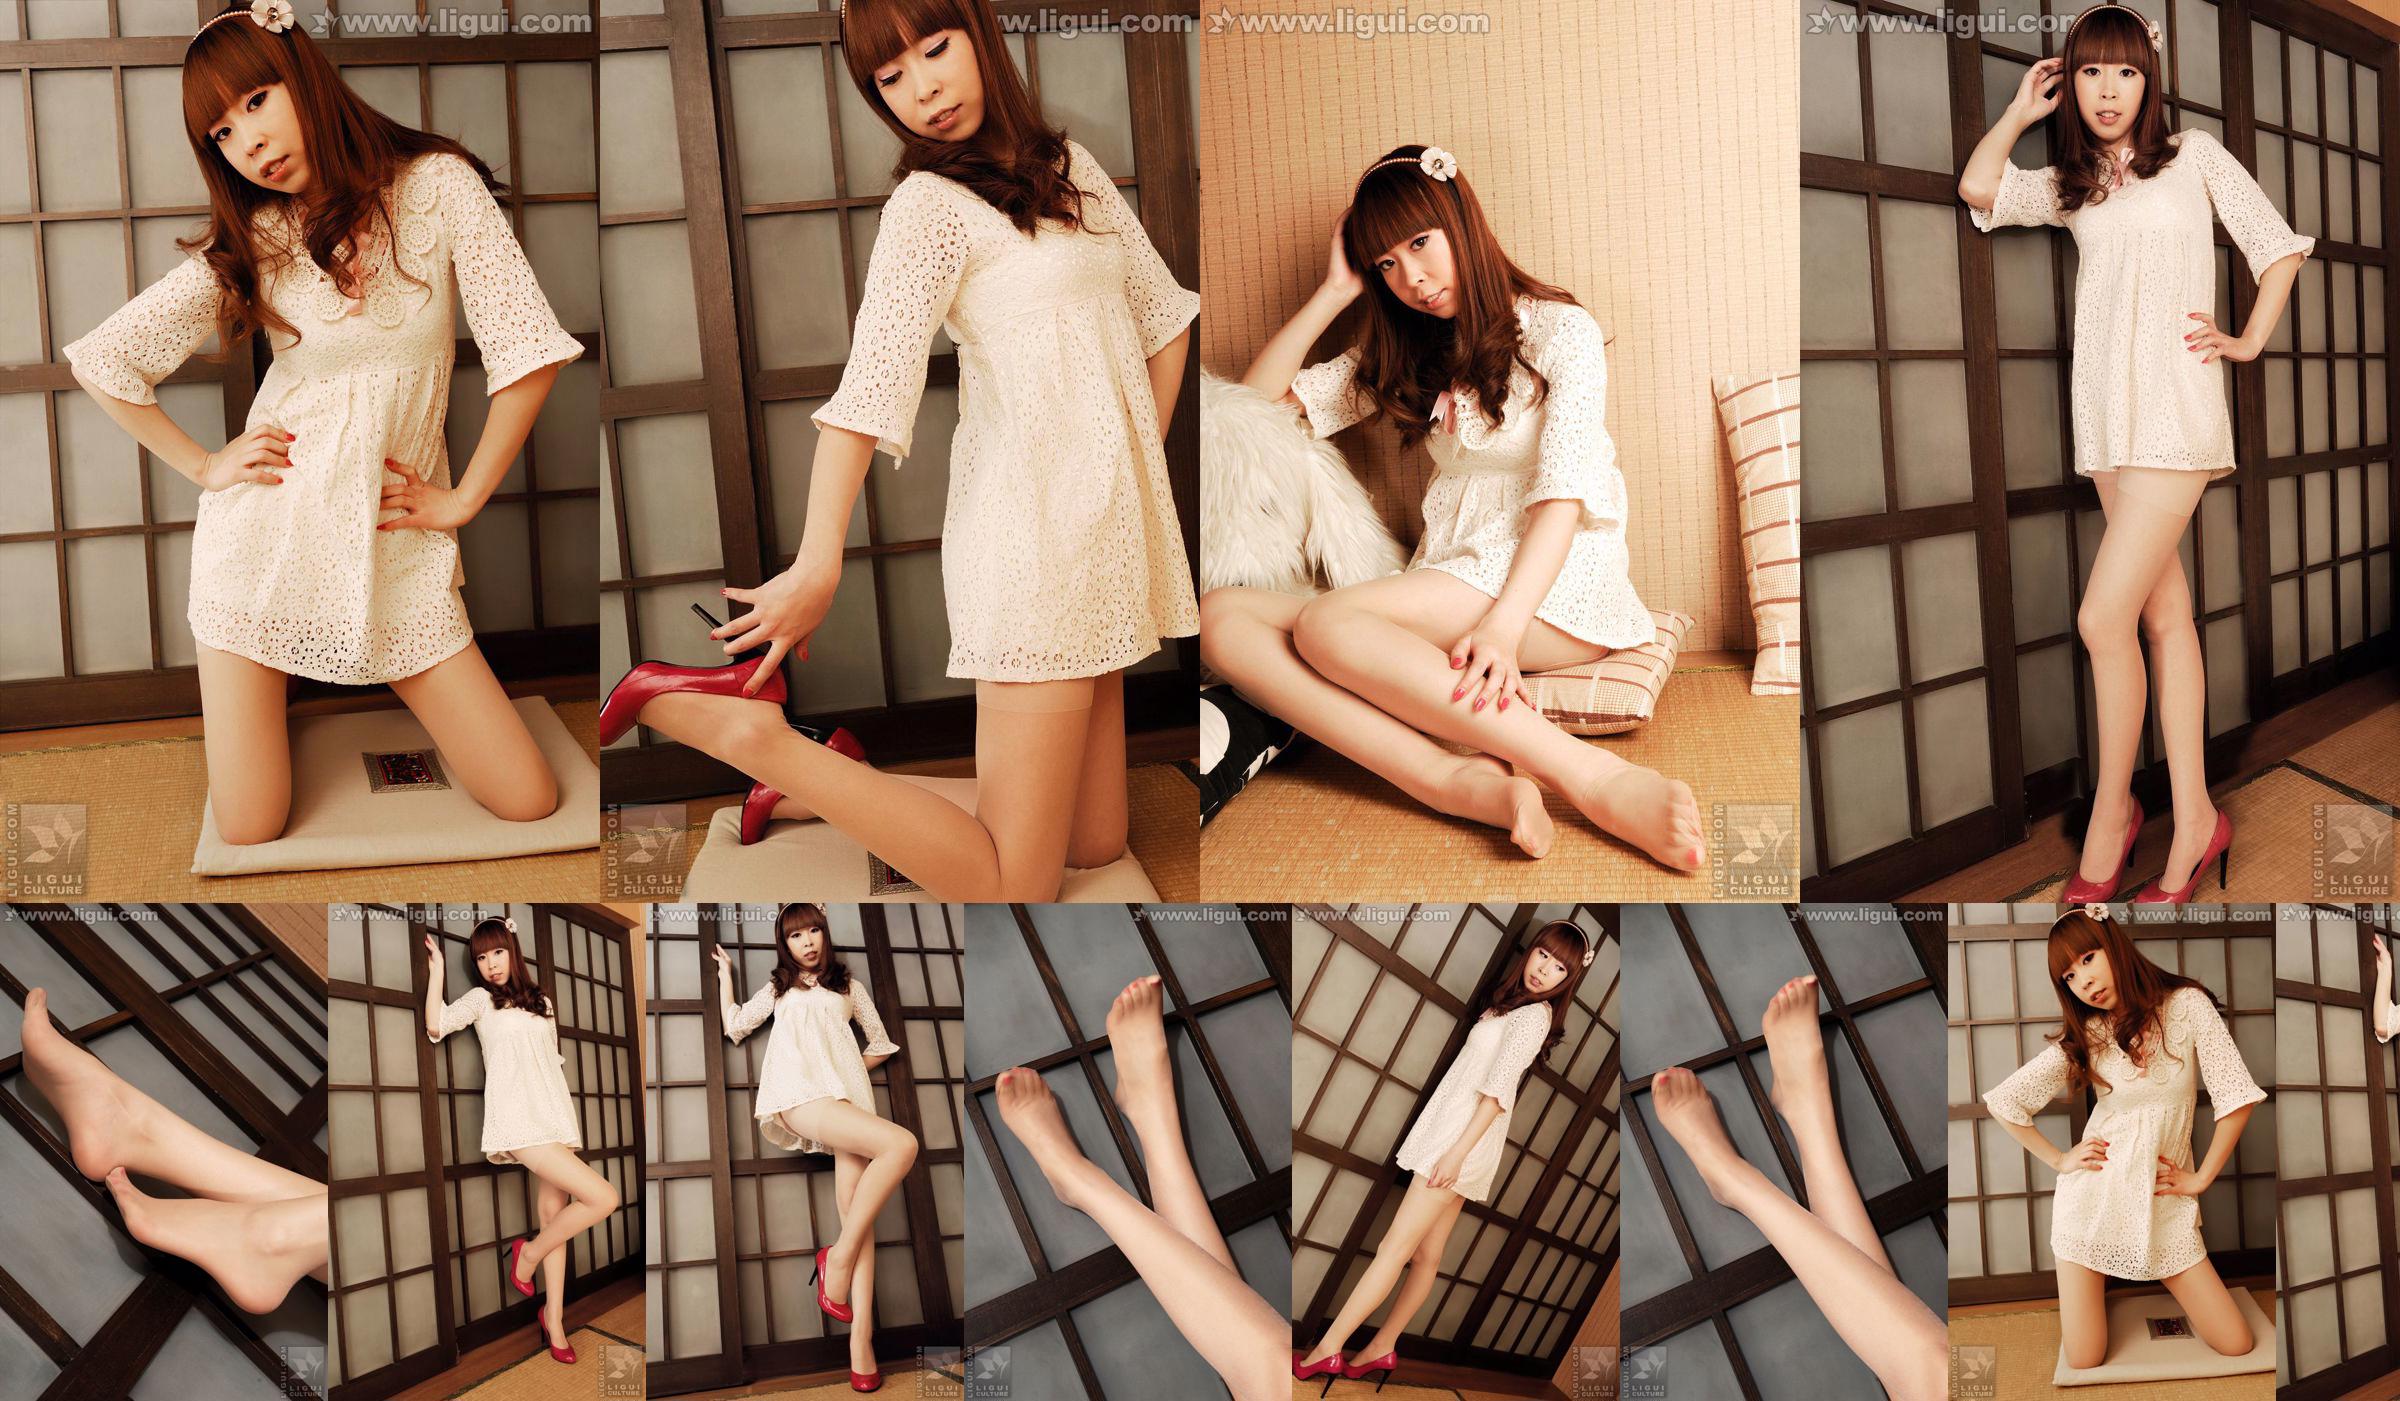 Modell Vikcy "Die Versuchung des japanischen Stils" [丽 柜 LiGui] Schöne Beine und Jadefuß Foto Bild No.69d1c0 Seite 6